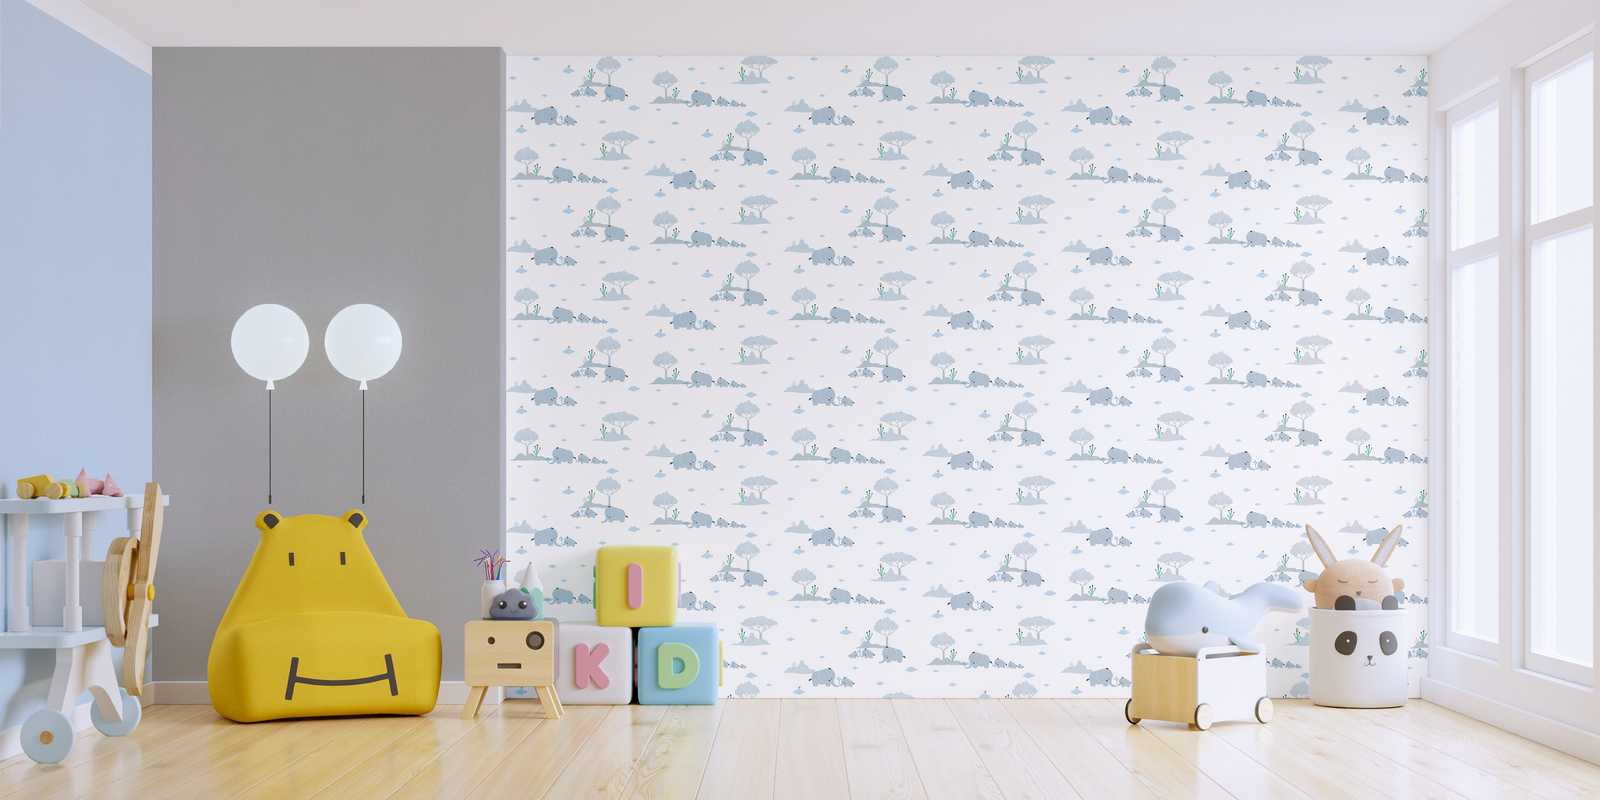             Kinderkamer behang jongens olifanten & landschap - blauw, grijs, wit
        